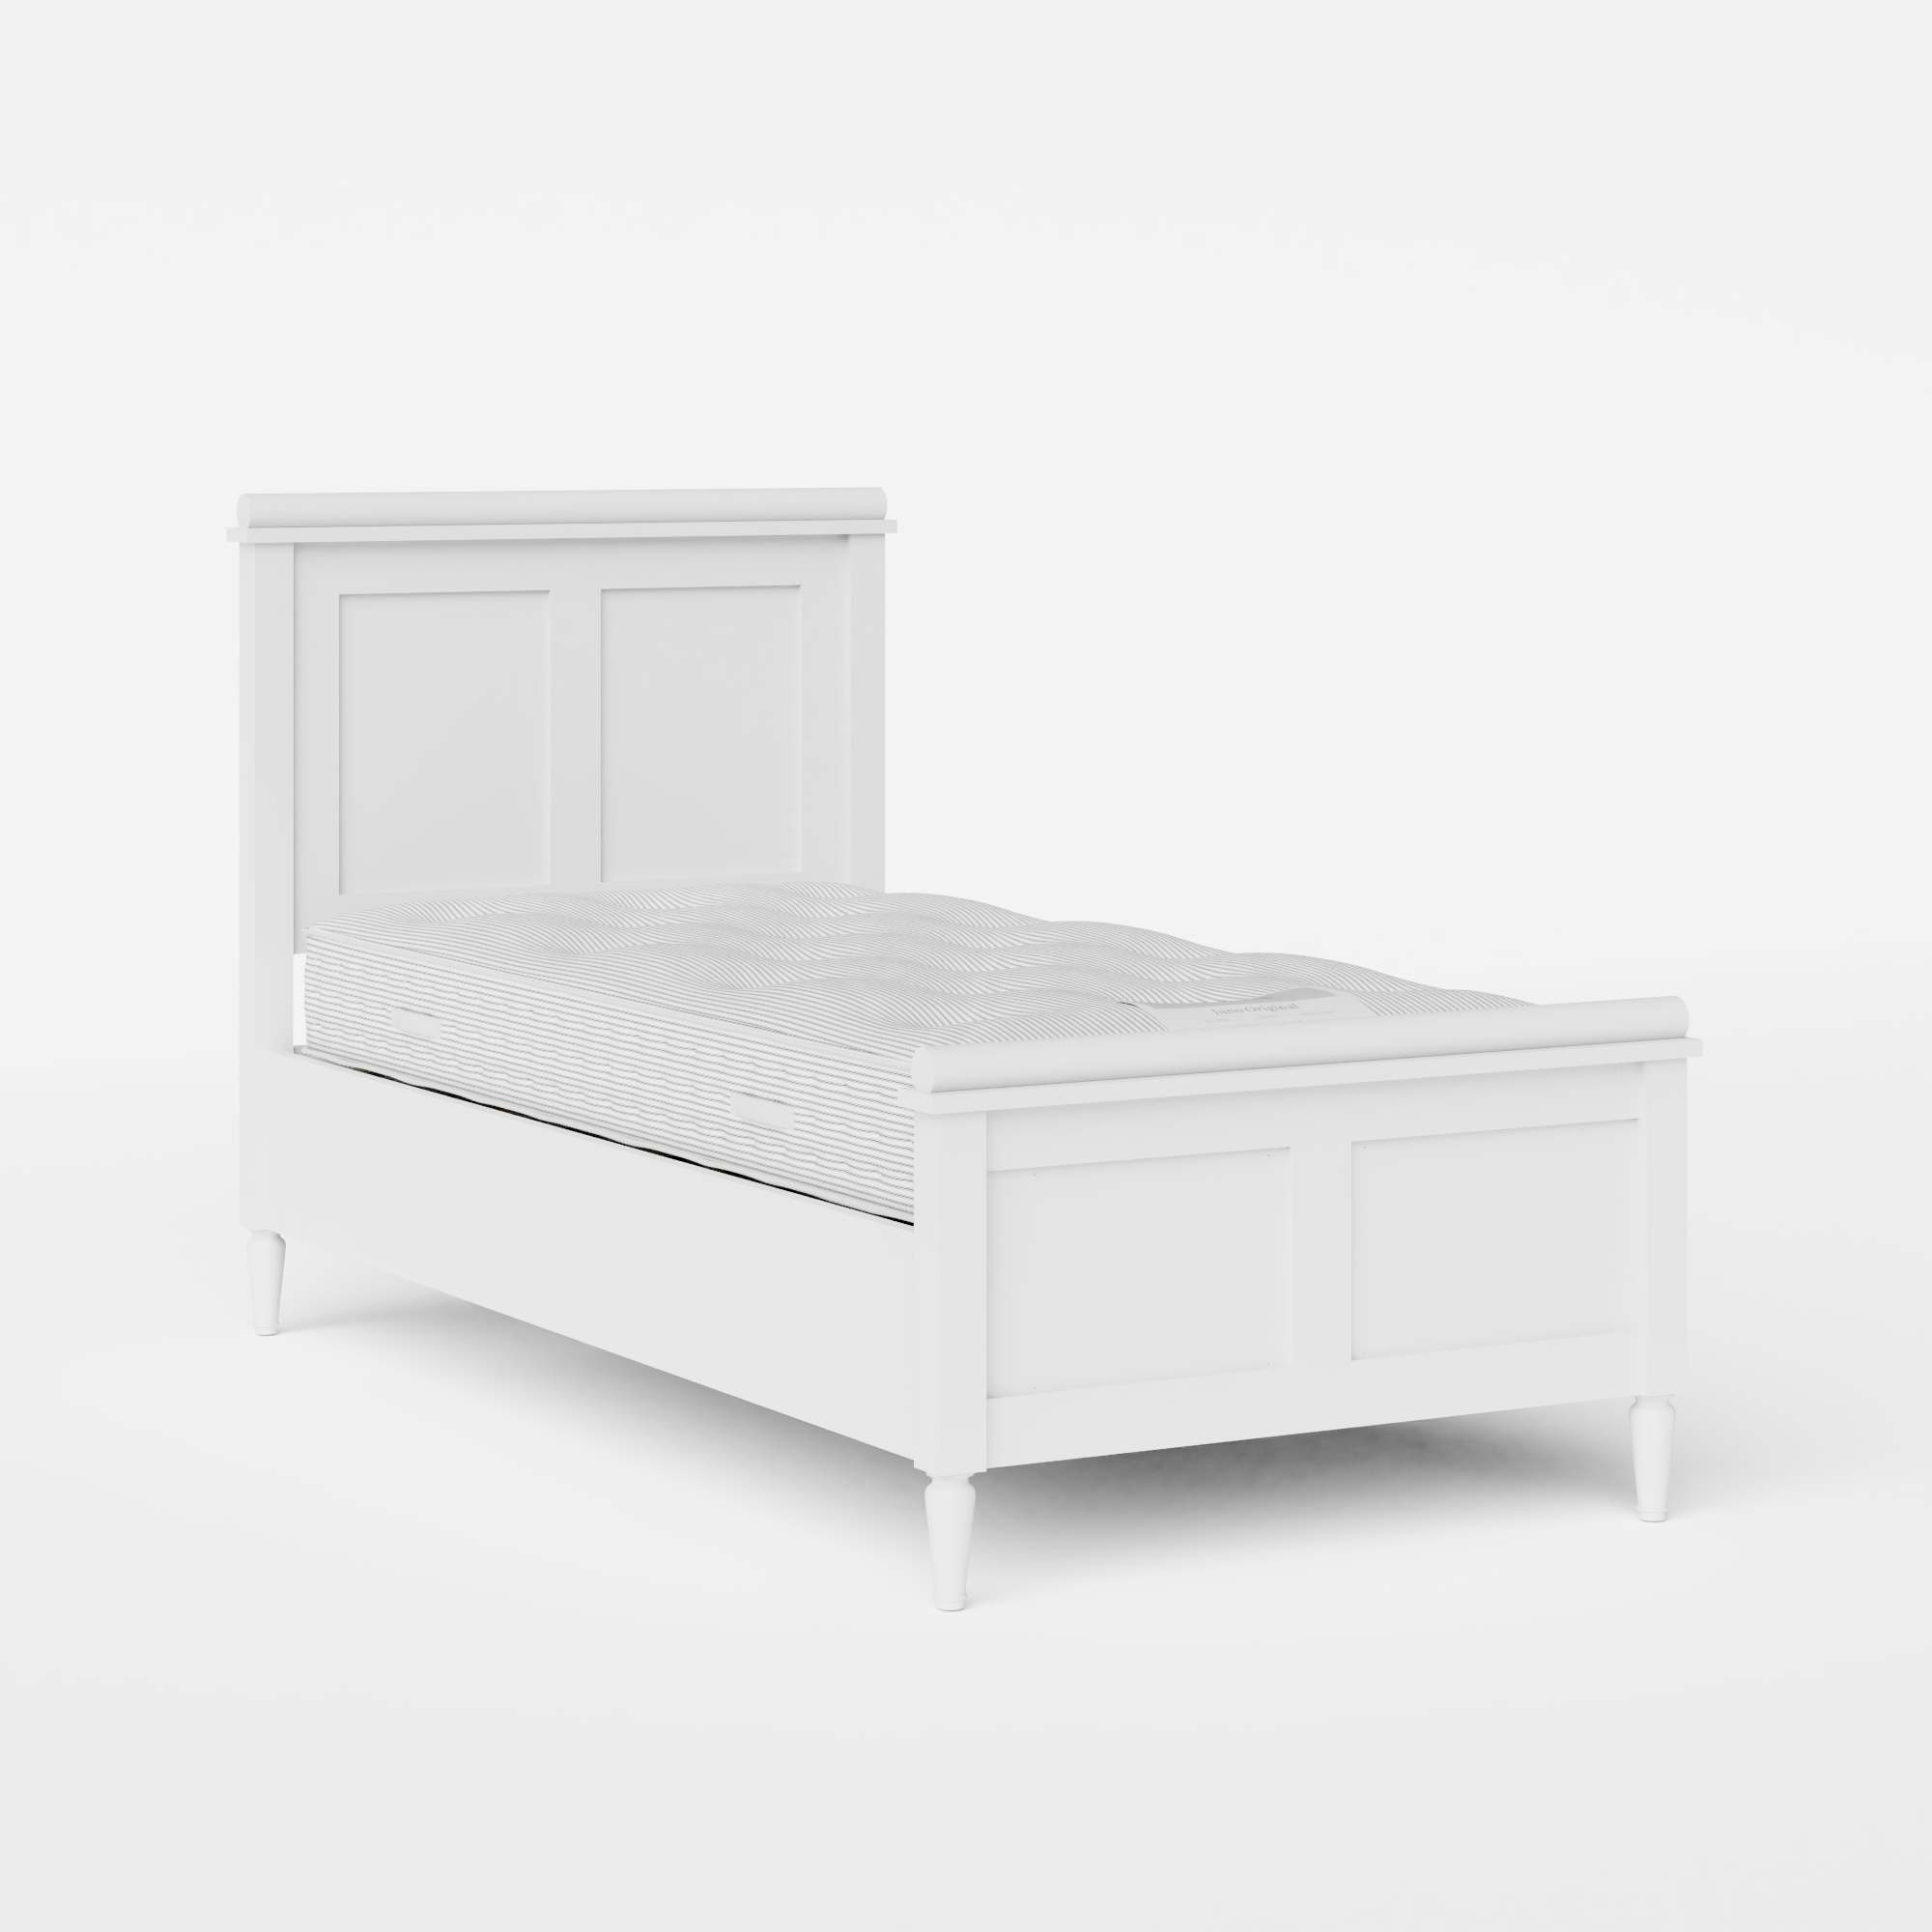 Nocturne Painted letto singolo in legno bianco con materasso